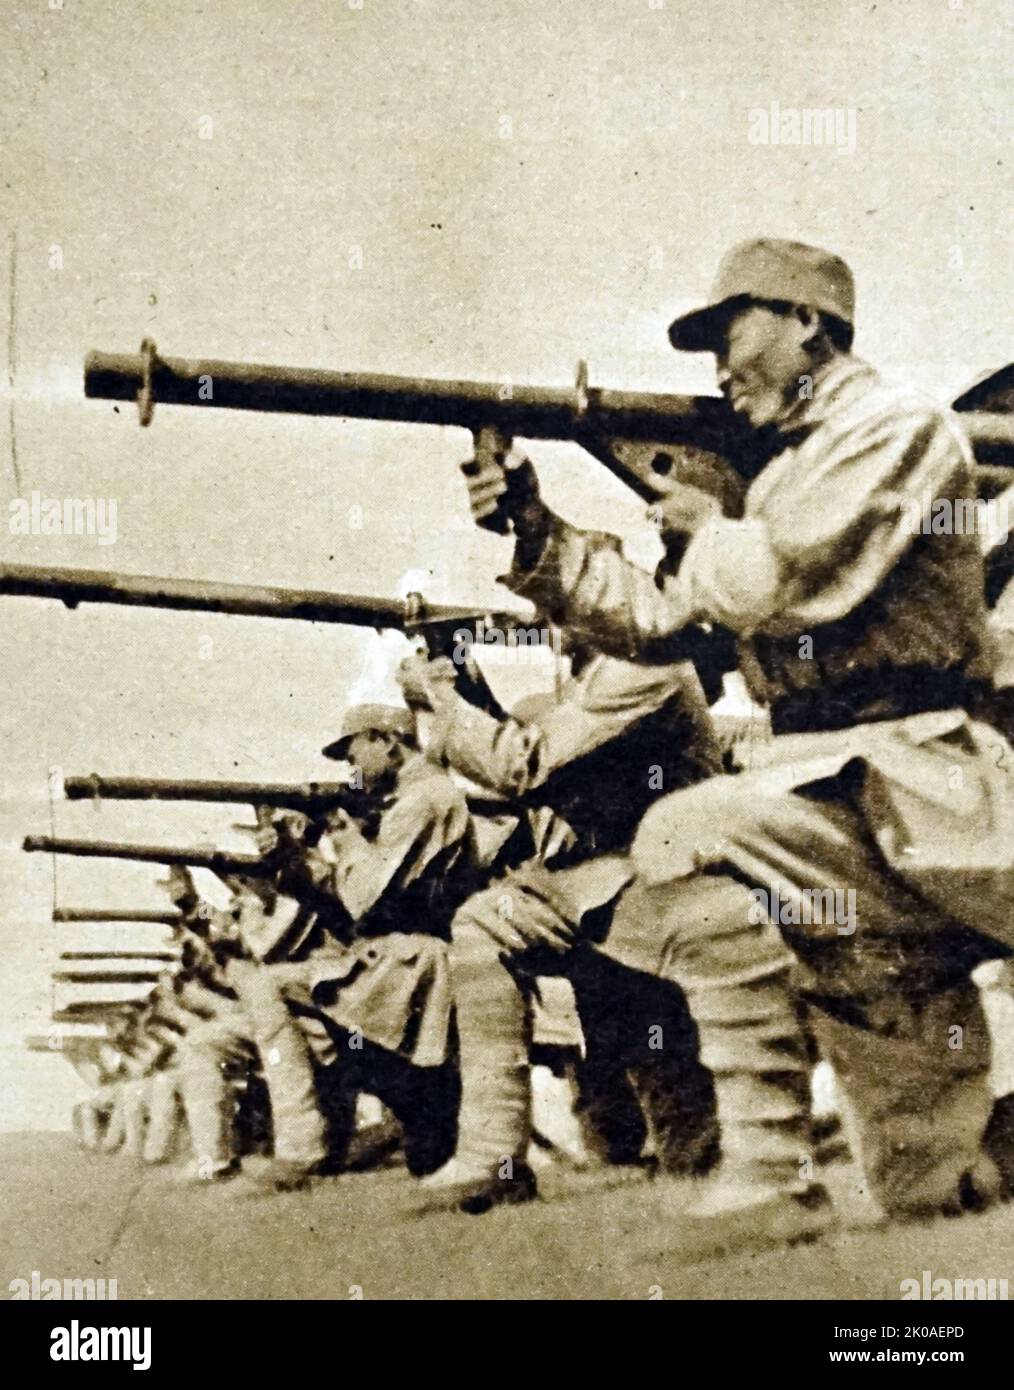 Chinesische kommunistische Truppen üben mit amerikanischen Bazookas, die von den Truppen von Chiang Kai-Shek neu gefangen genommen wurden: Ein Foto, das in der Mandschurei aufgenommen wurde. Chinesischer Bürgerkrieg, 1949 Stockfoto